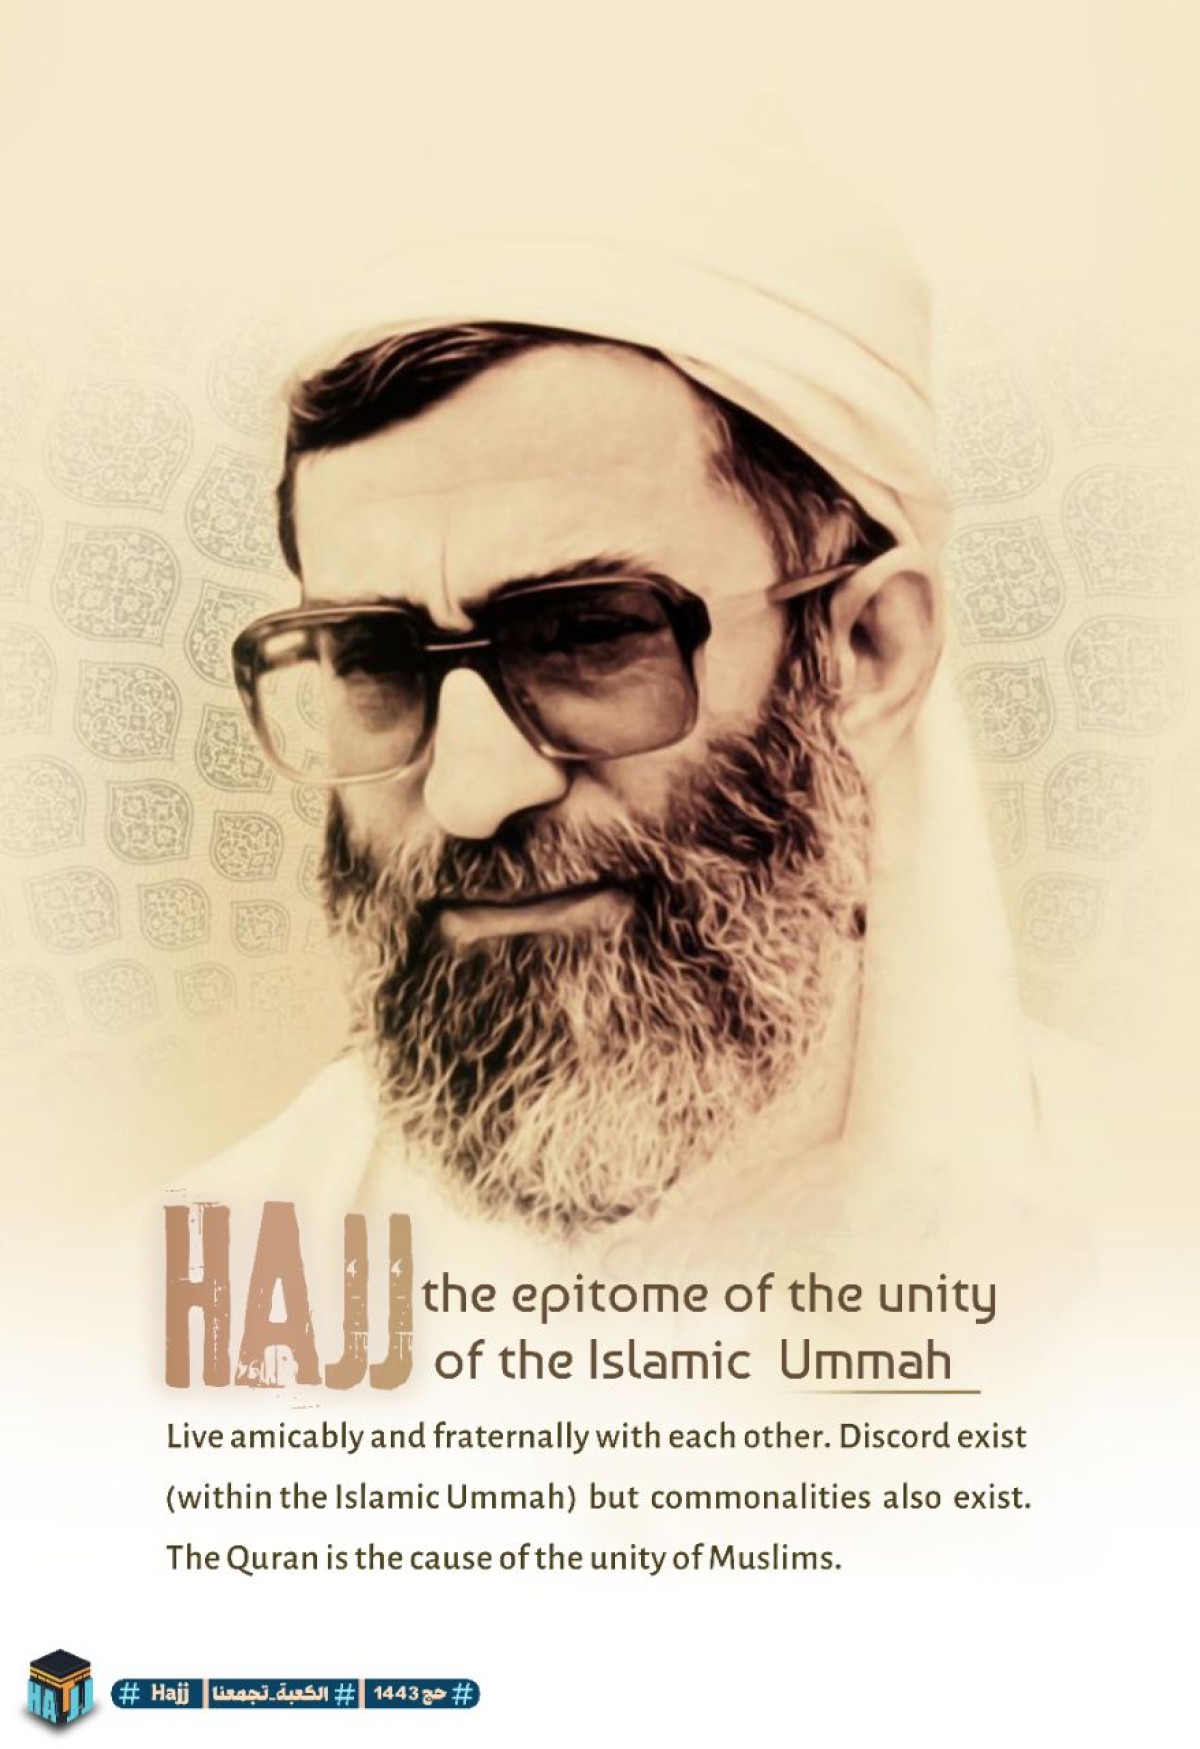 hajj the epitome of the unity of Islamic ummah